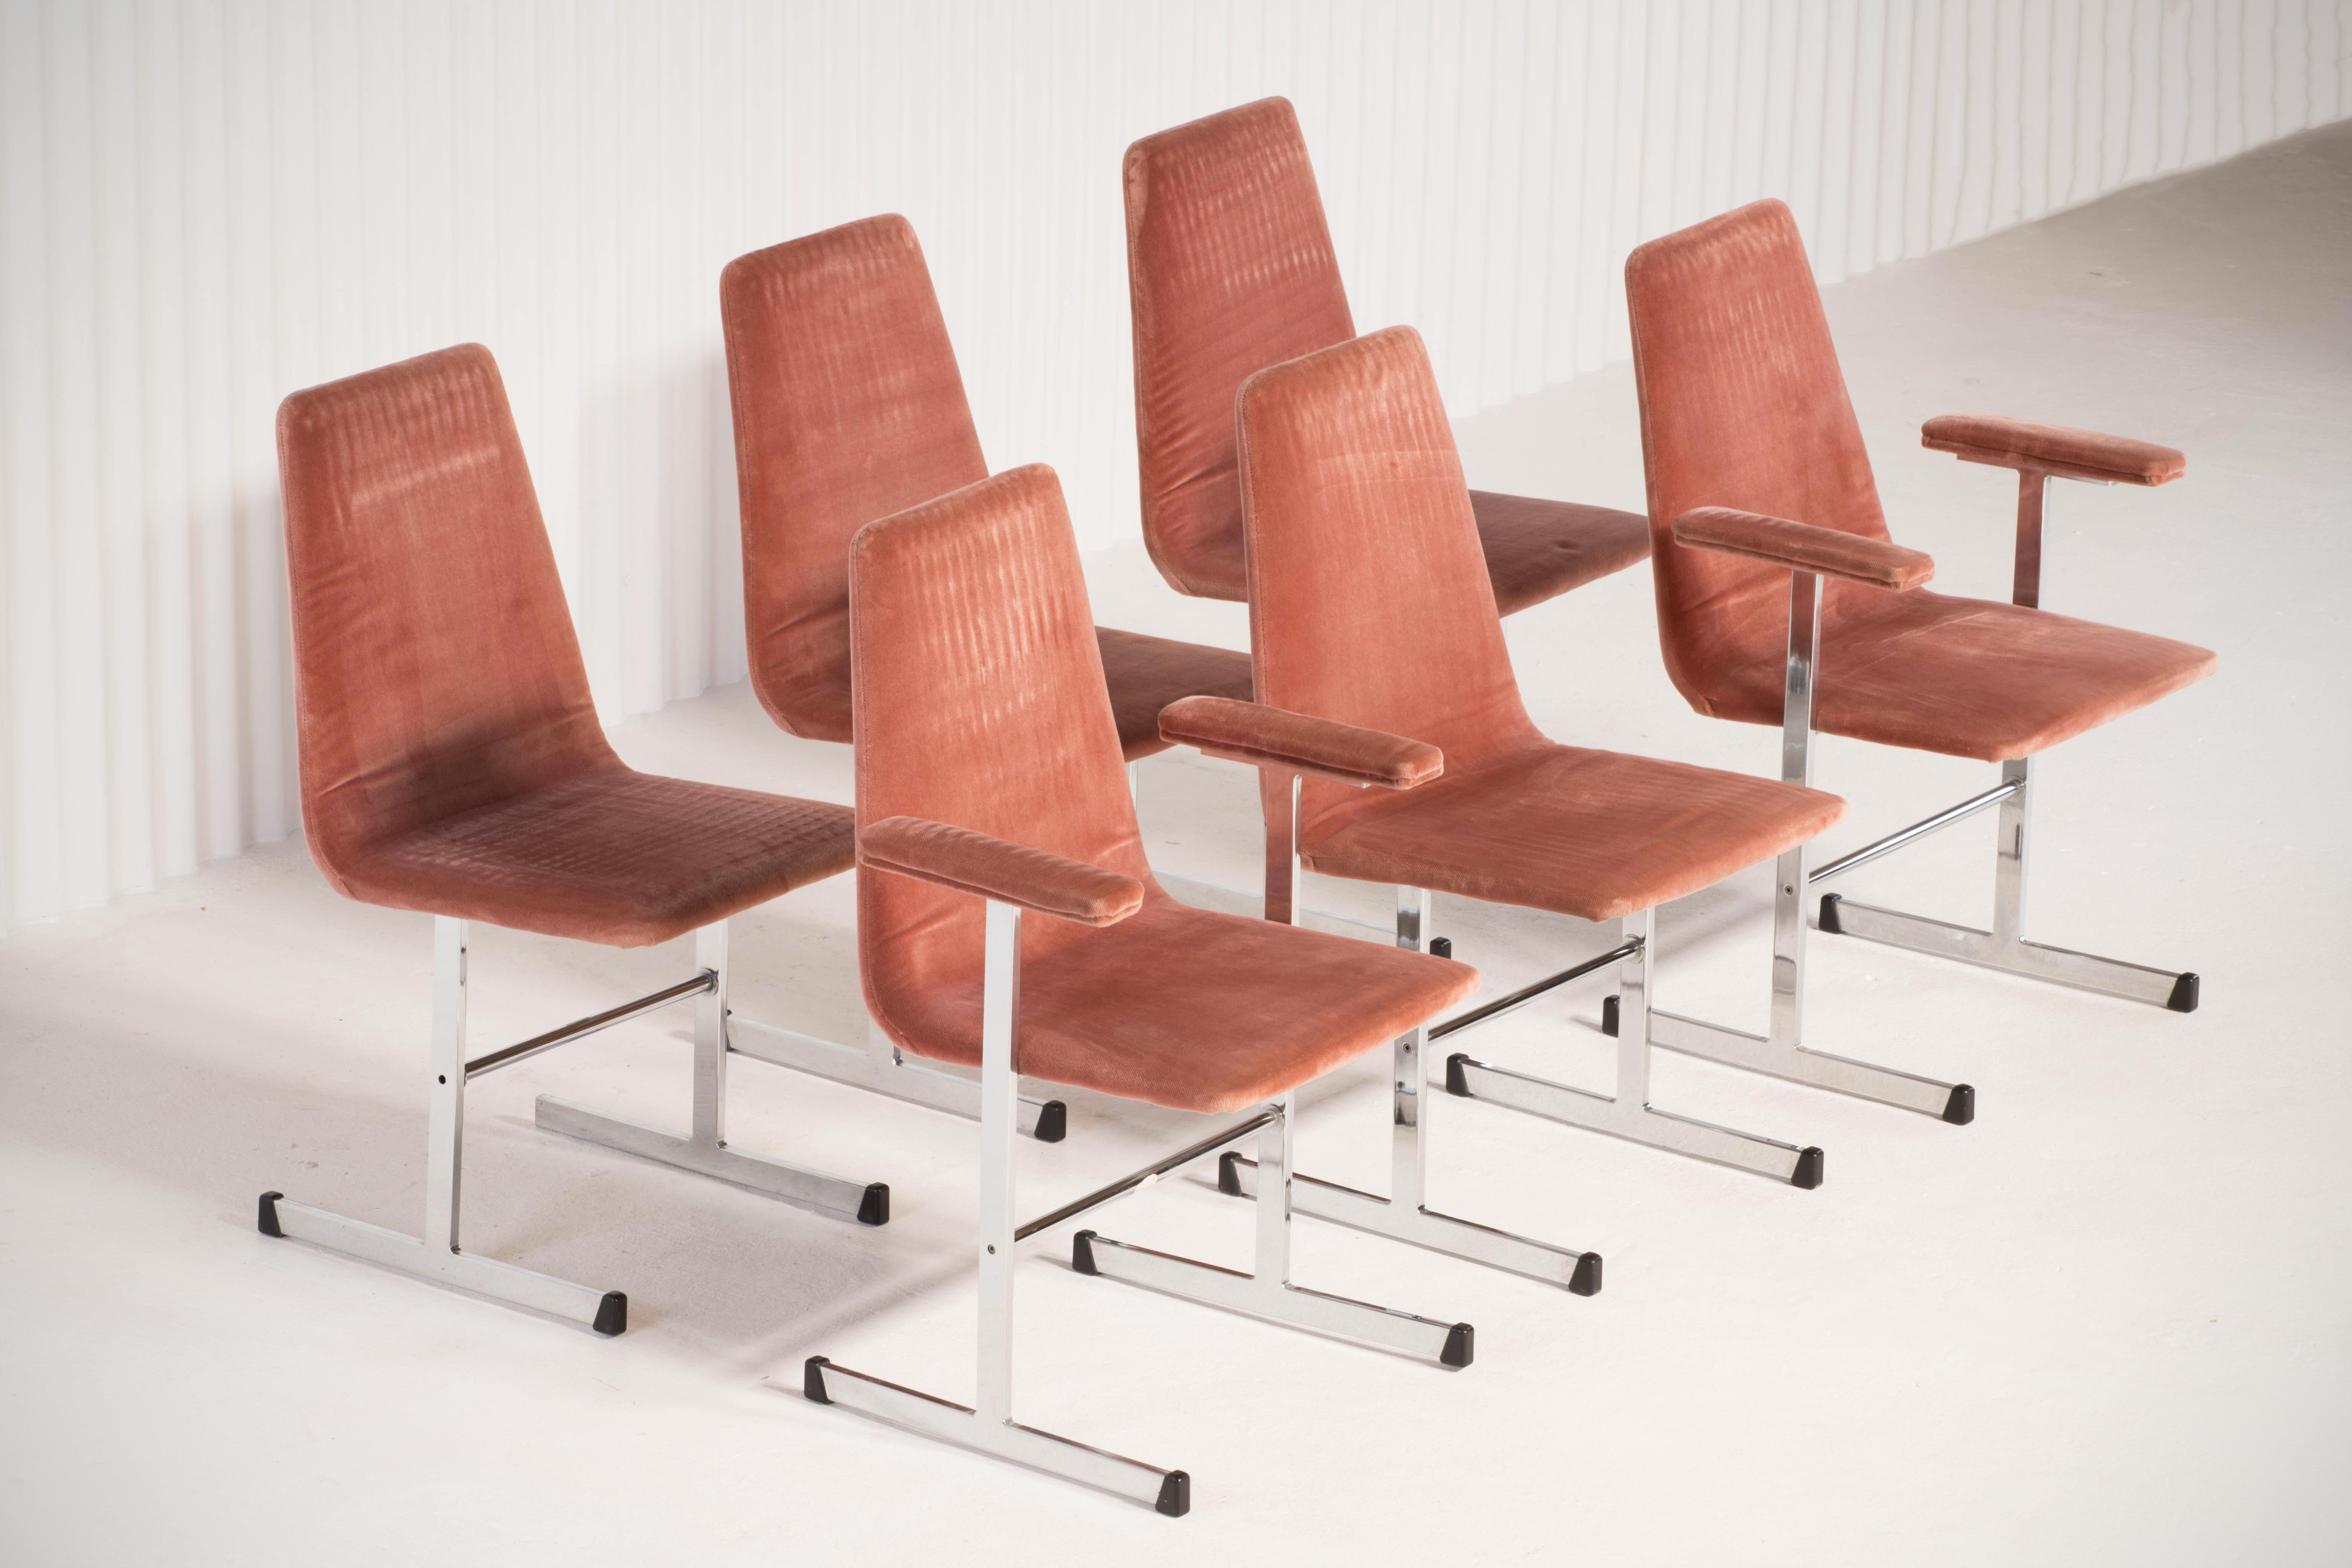 Conçu et fabriqué par la maison de meubles britannique Pieff, cet ensemble de six chaises de salle à manger est un exemple fantastique du design classique des années 1970.

Avec des cadres cantilever chromés.

Les cadres chromés ont été polis